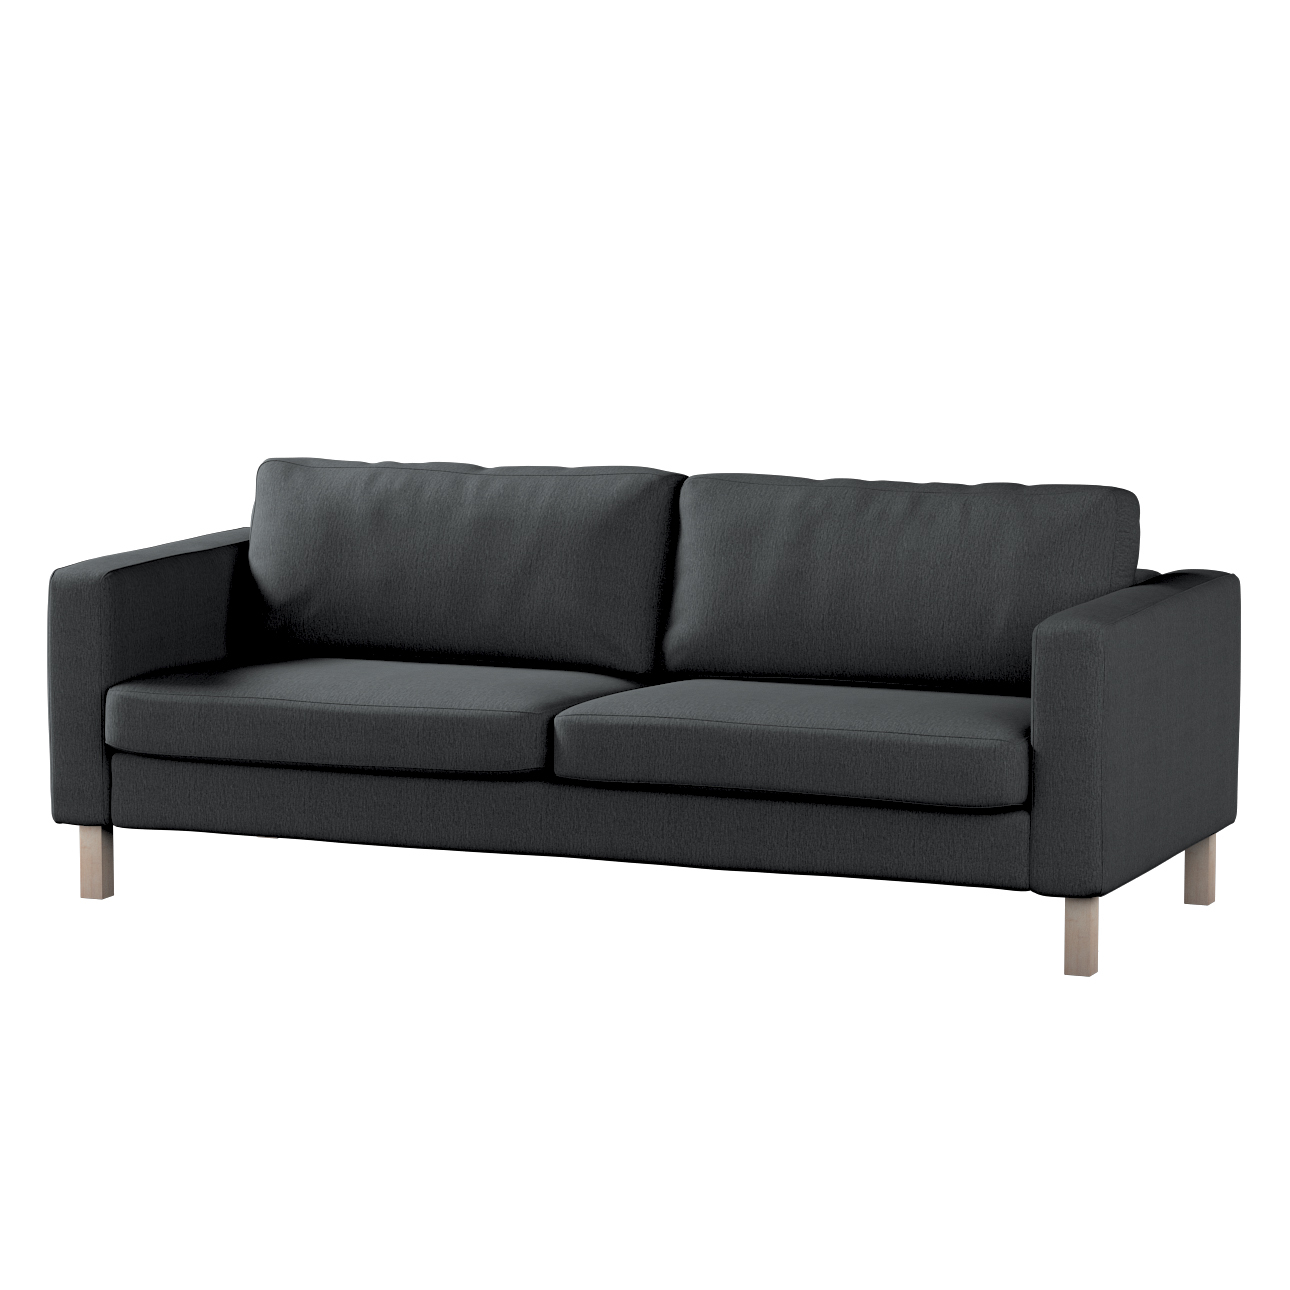 Bezug für Karlstad 3-Sitzer Sofa nicht ausklappbar, kurz, stahlgrau, Bezug günstig online kaufen